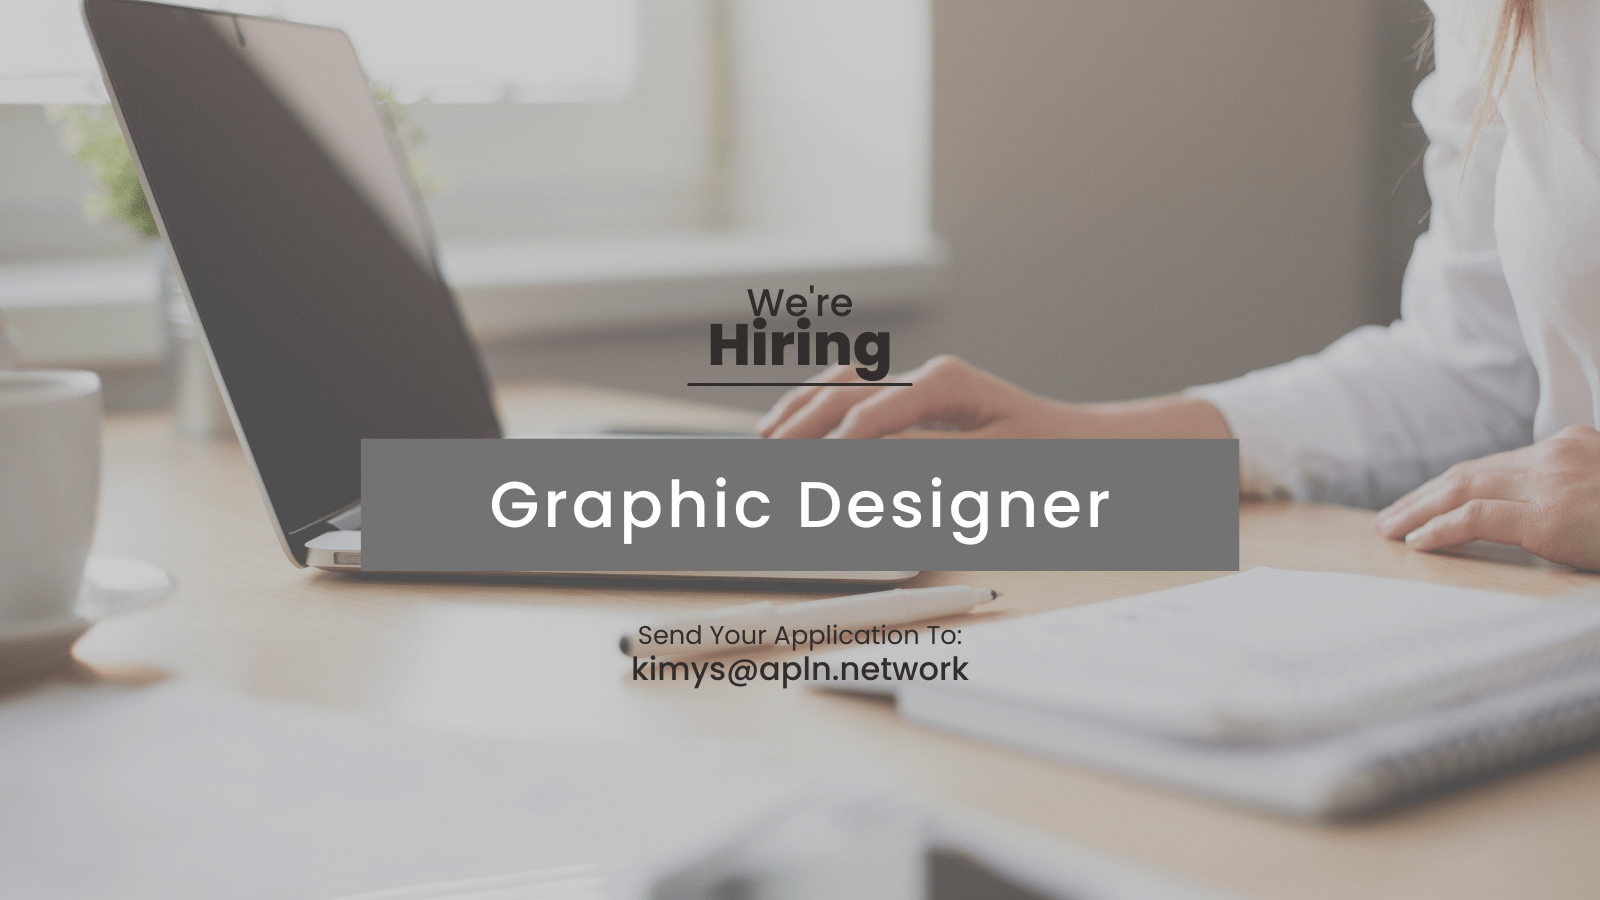 [CLOSED] Graphic Designer – Job Advert